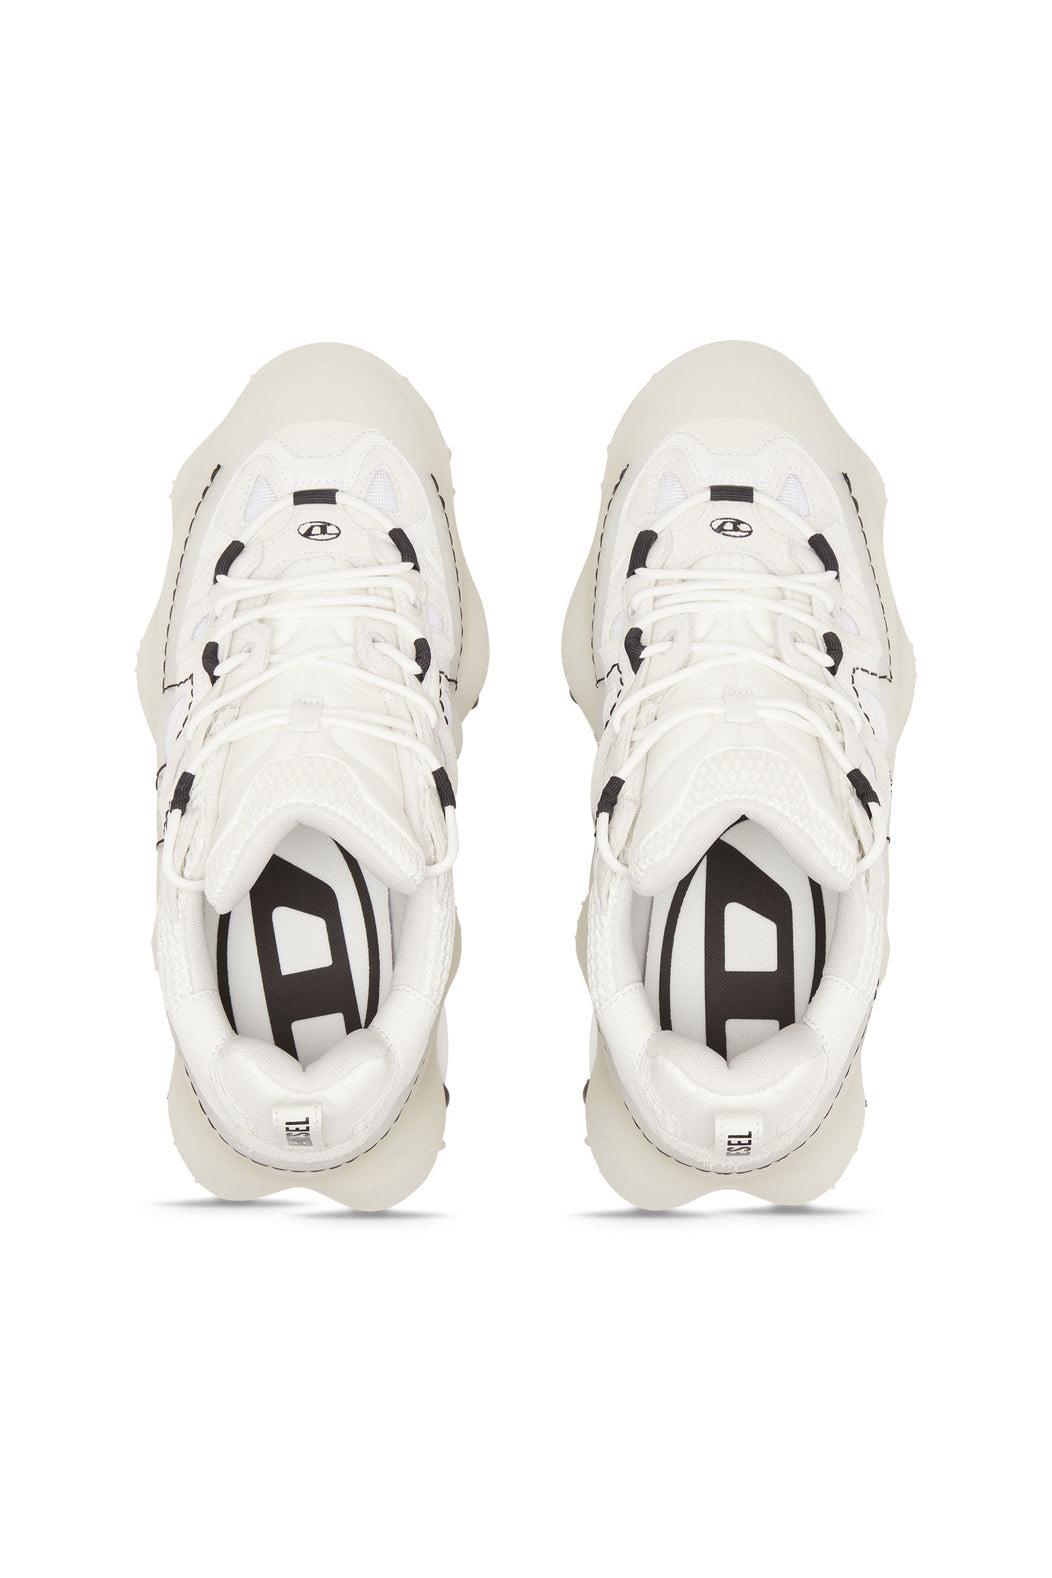 Diesel Y03135P5604 Mens S-Prototype P1 Sneakers White And Black